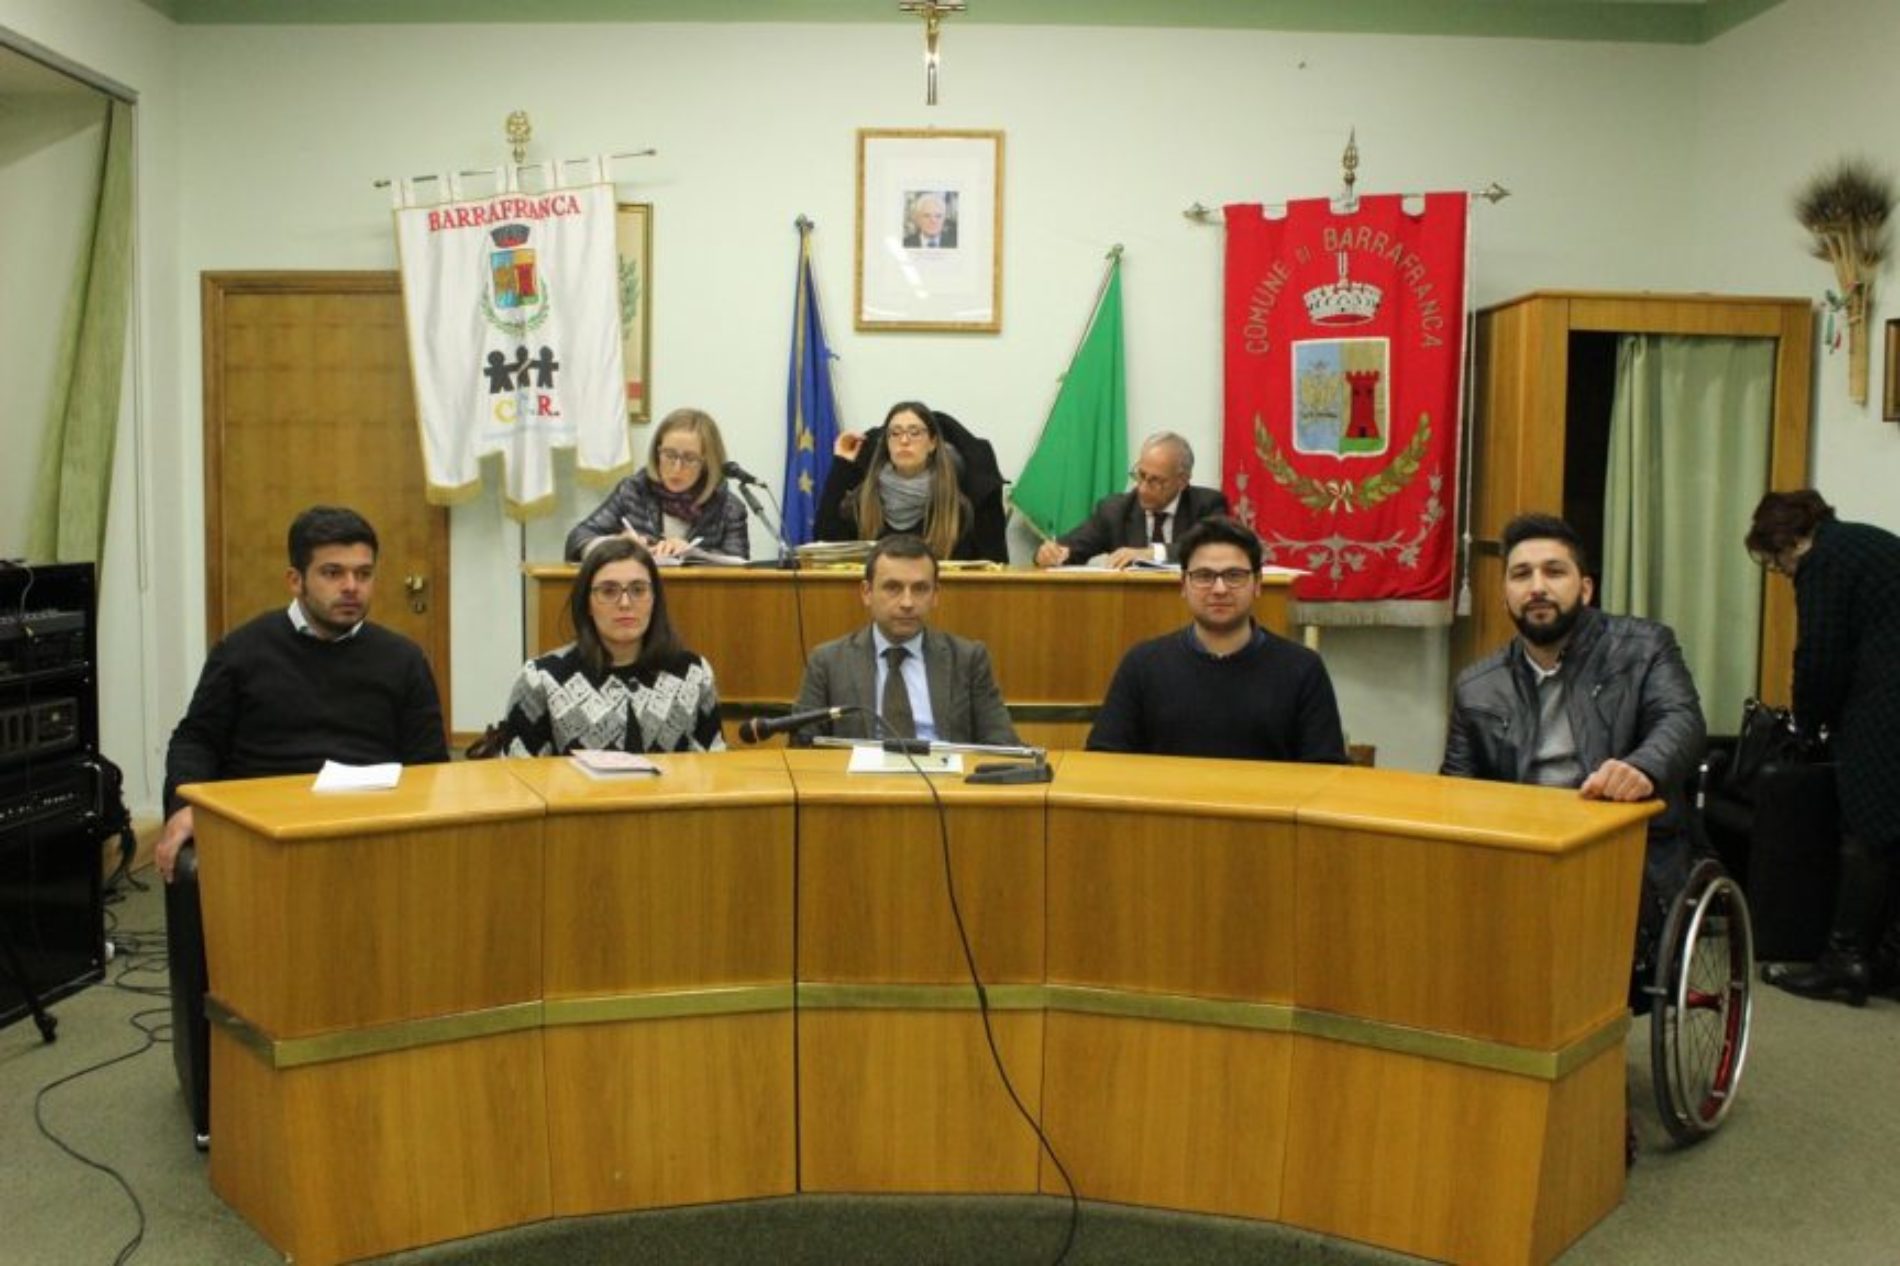 Il sindaco Accardi: “Barrafranca sullo Sprar è stato da traino per i comuni di Enna e Caltanissetta sul Piano Nazionale Accoglienza”